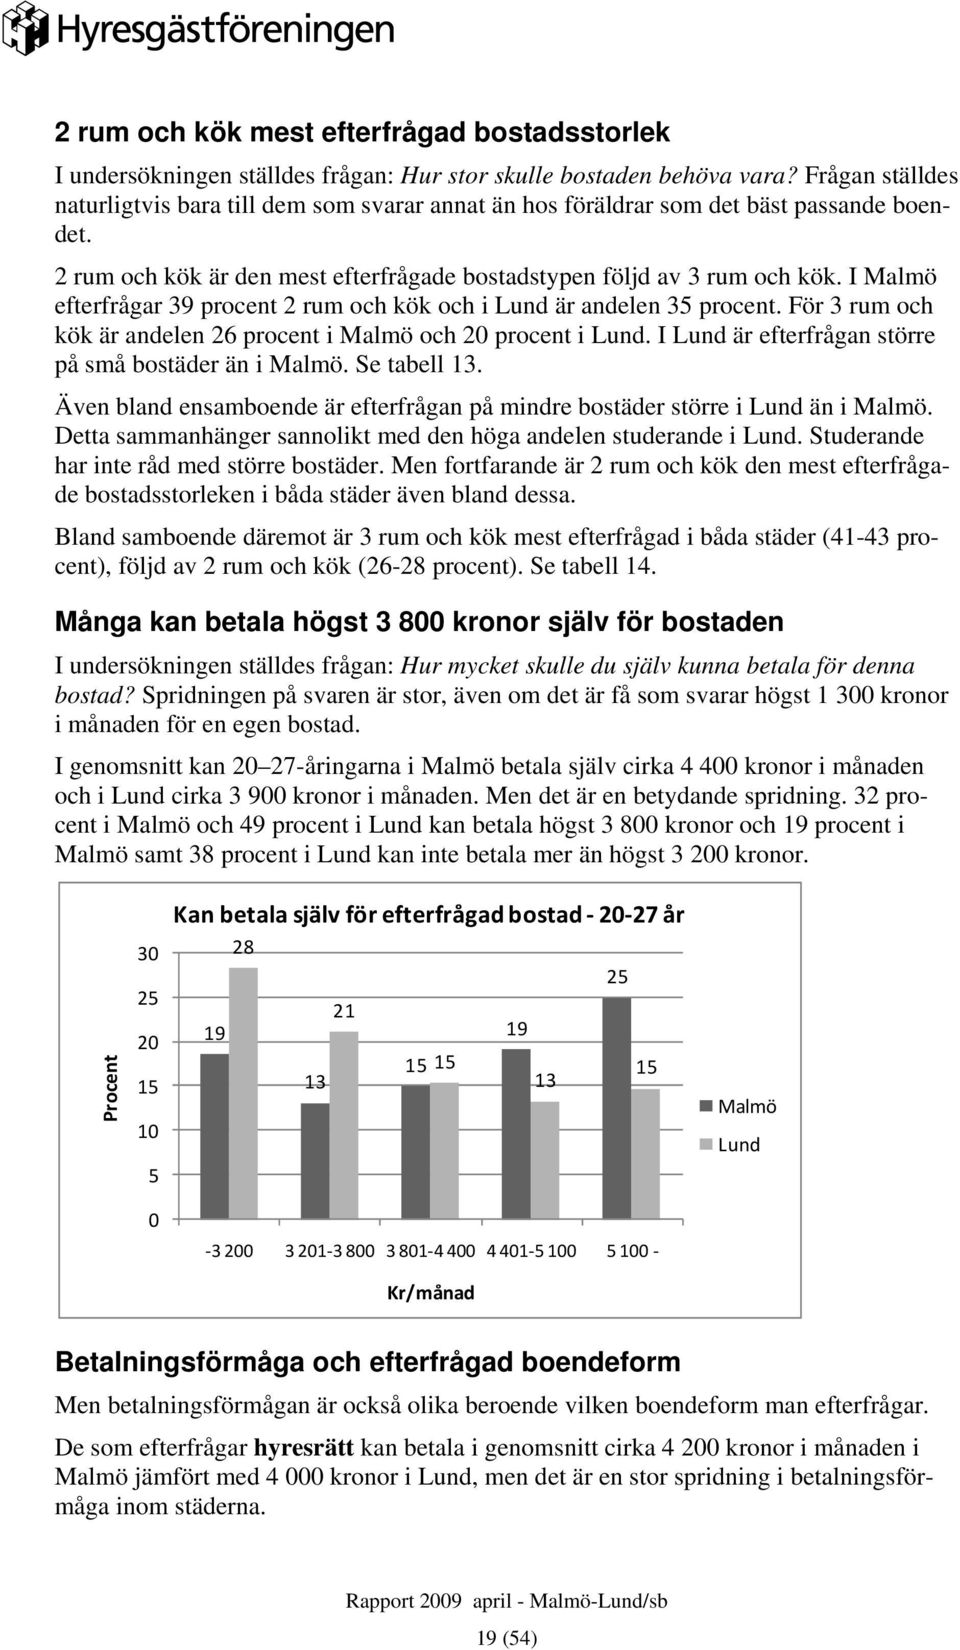 I Malmö efterfrågar 39 procent 2 rum och kök och i Lund är andelen 35 procent. För 3 rum och kök är andelen 26 procent i Malmö och 20 procent i Lund.